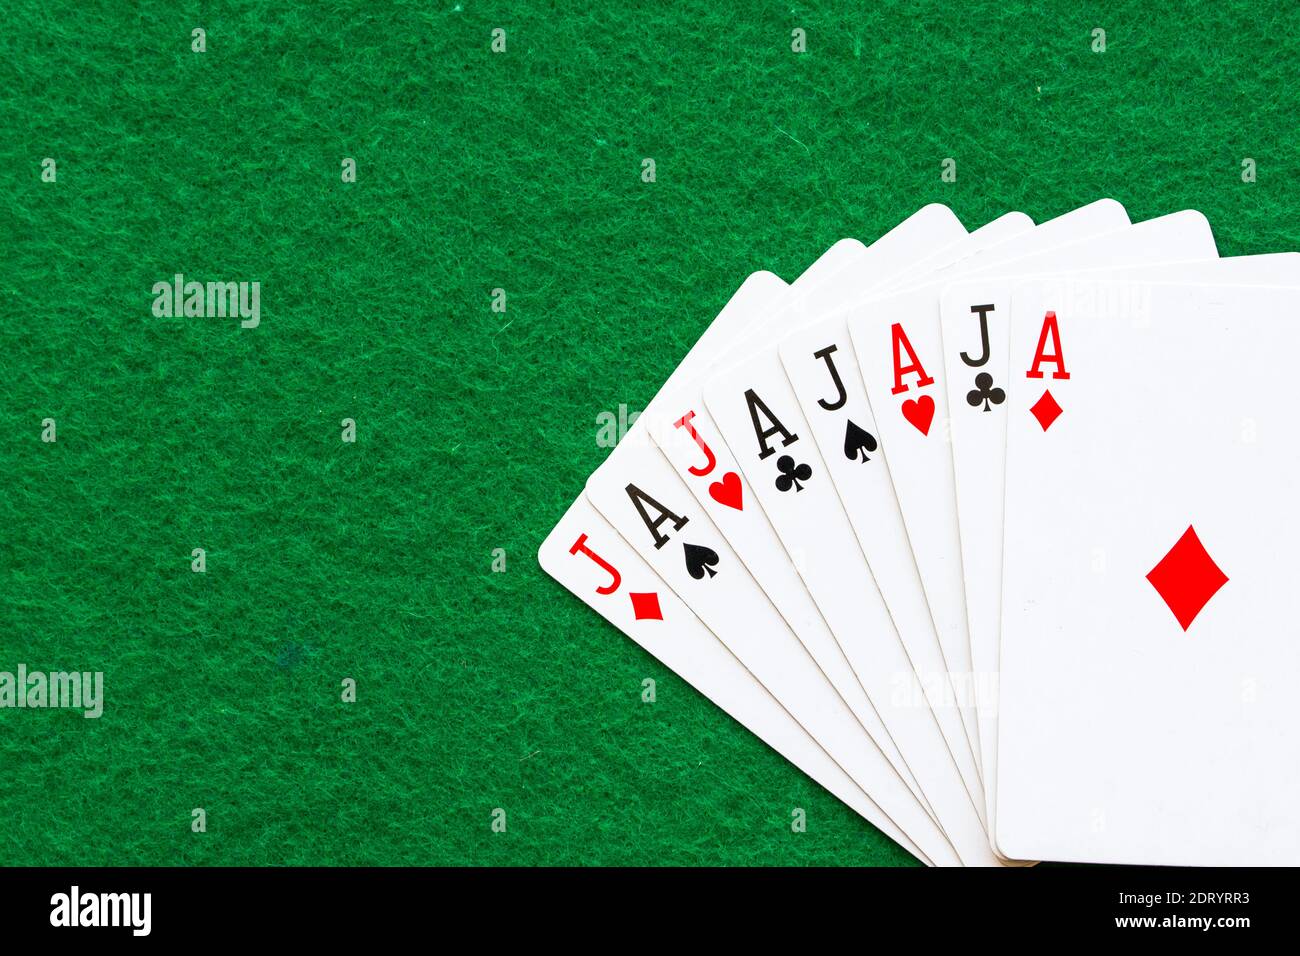 Poker-Karten auf grünem Teppich, bilden die palaba haha Stockfoto